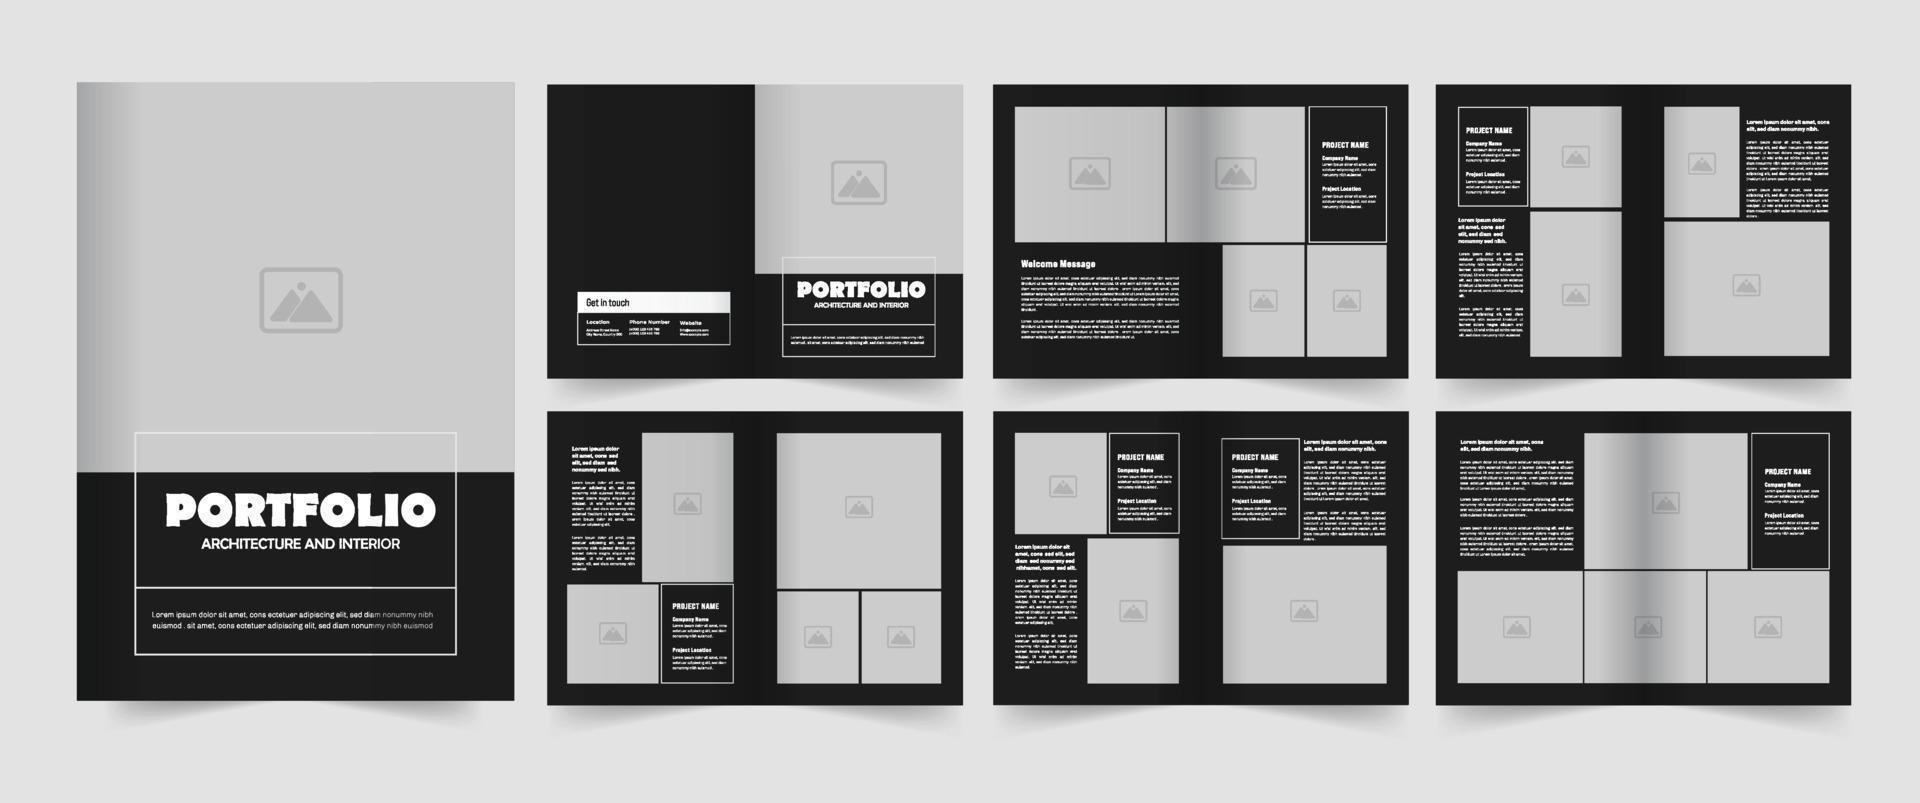 Architecture Portfolio Design or Portfolio Layout Design vector